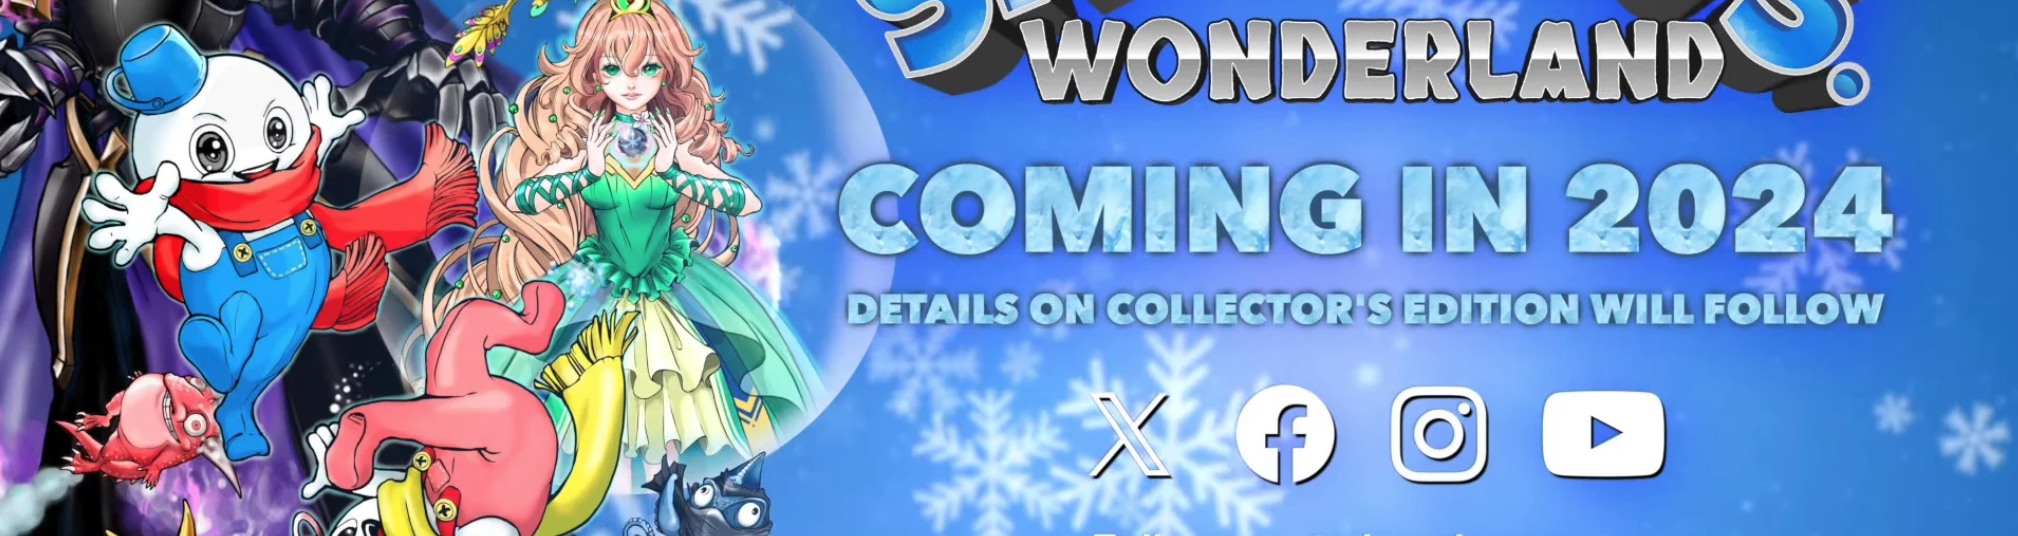 El nuevo juego de Snow Bros. anuncia edición de colección